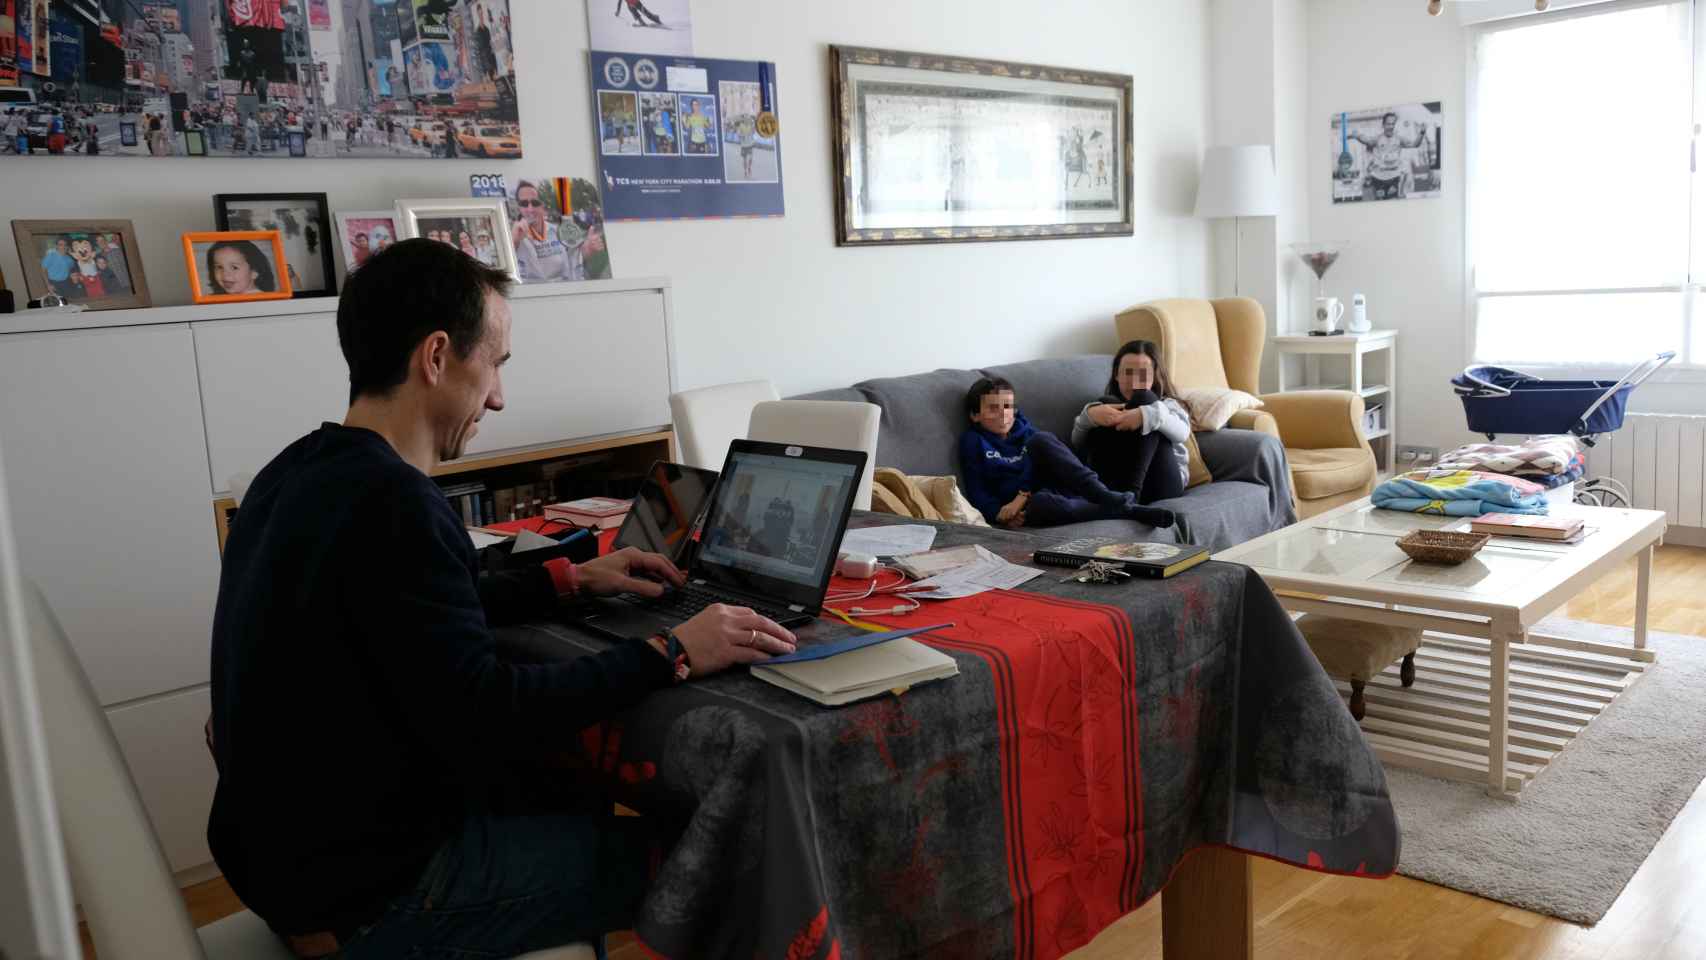 Joaquín, en la mesa, con el ordenador encendido; sus hijos, en el sofá.